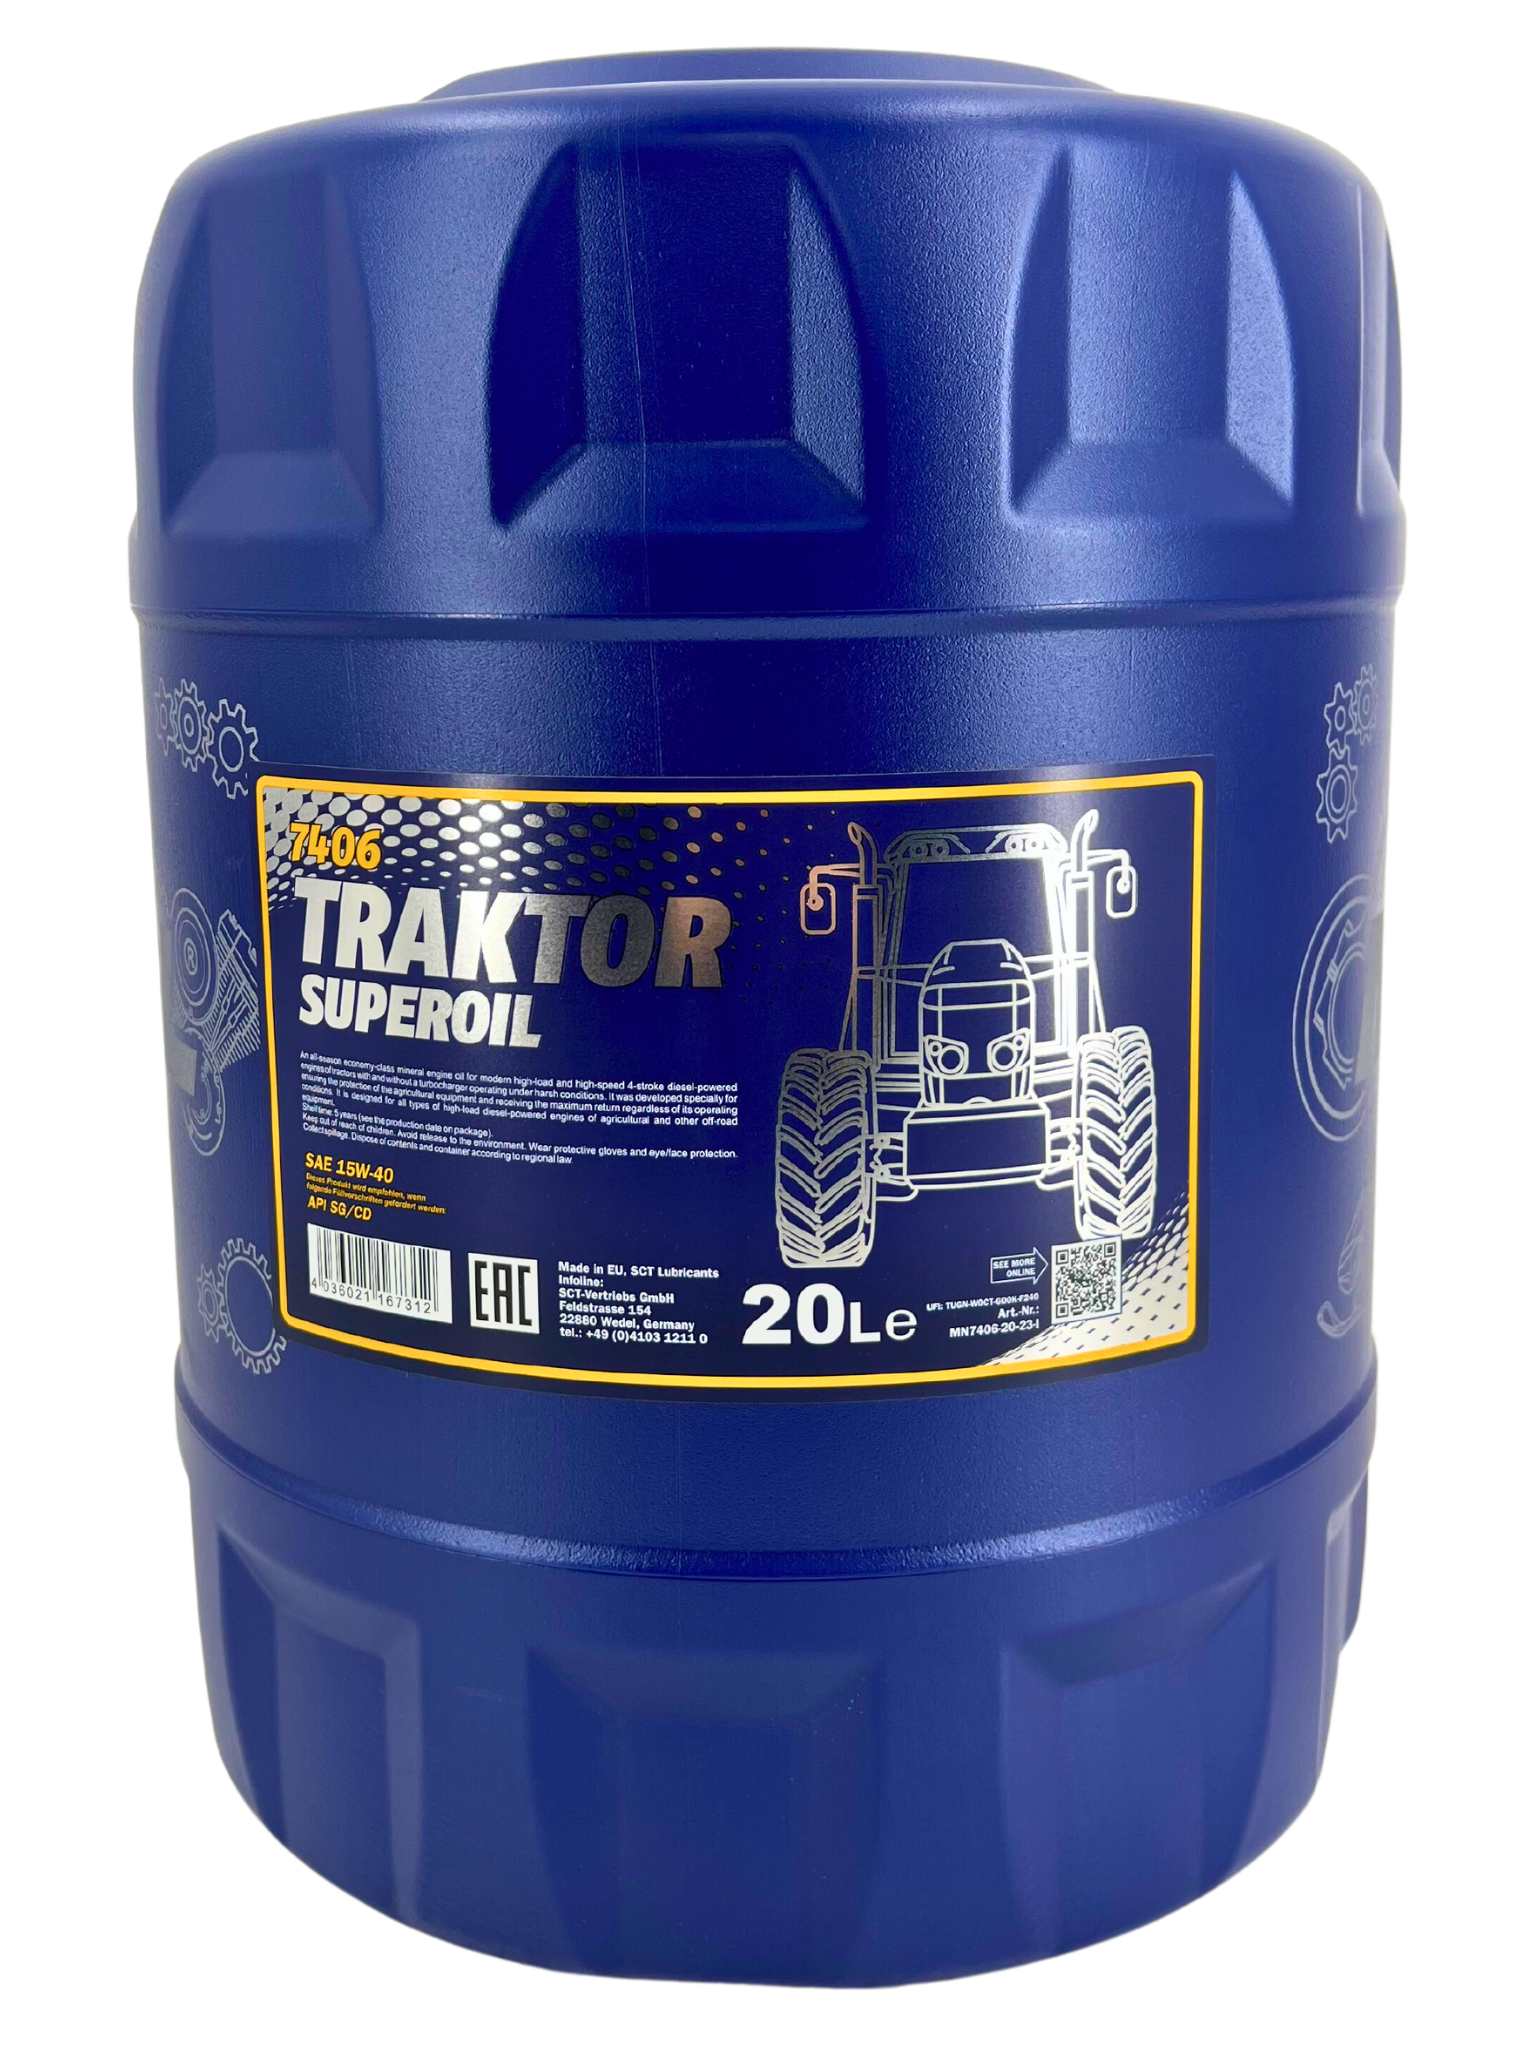 Mannol Traktor Superoil 15W-40 20 Liter